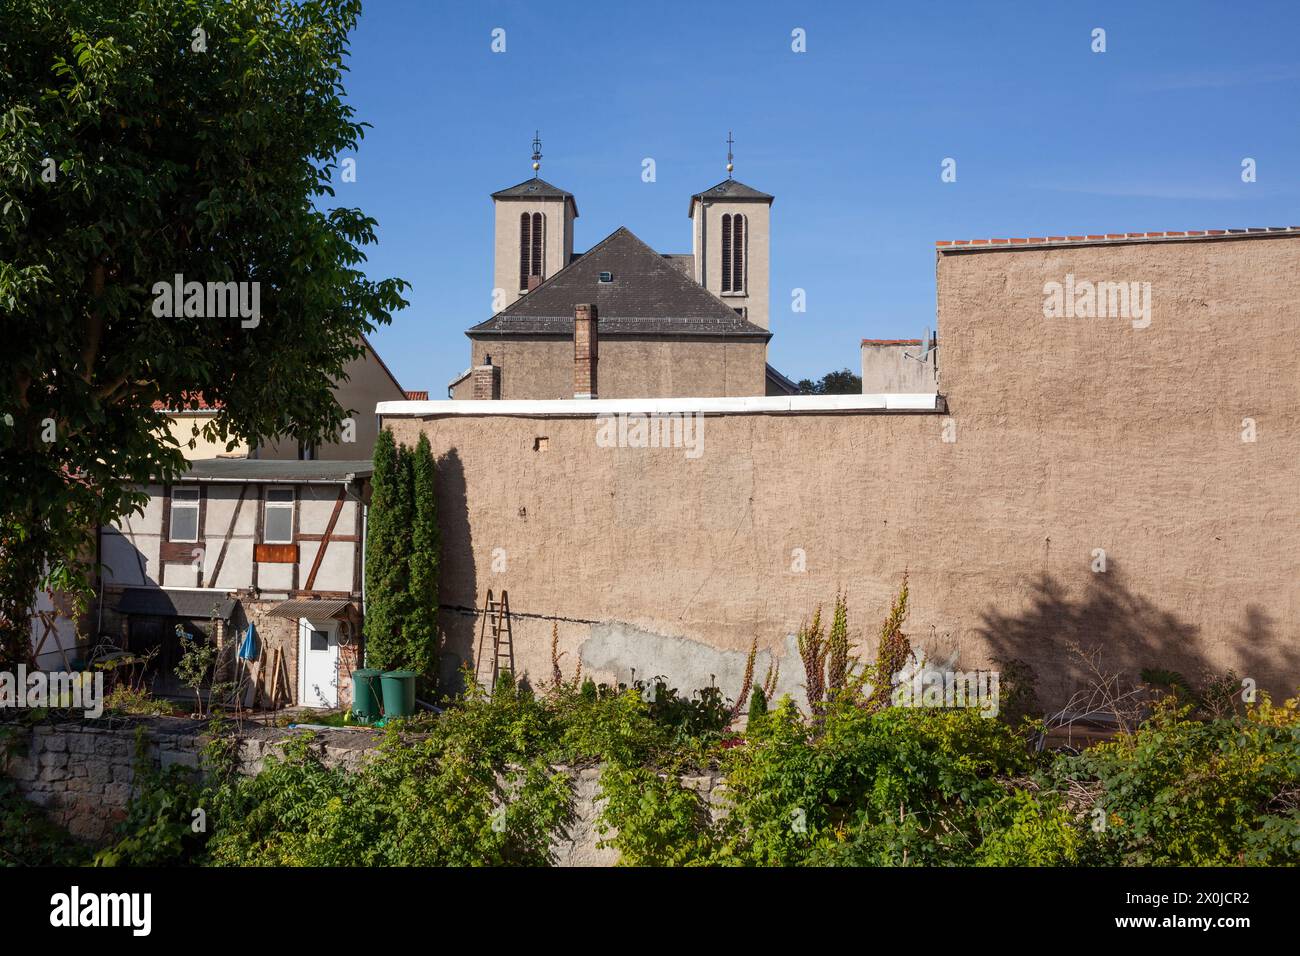 Katholische Kirche, Naumburg, Sachsen-Anhalt, Deutschland, Europa Stockfoto